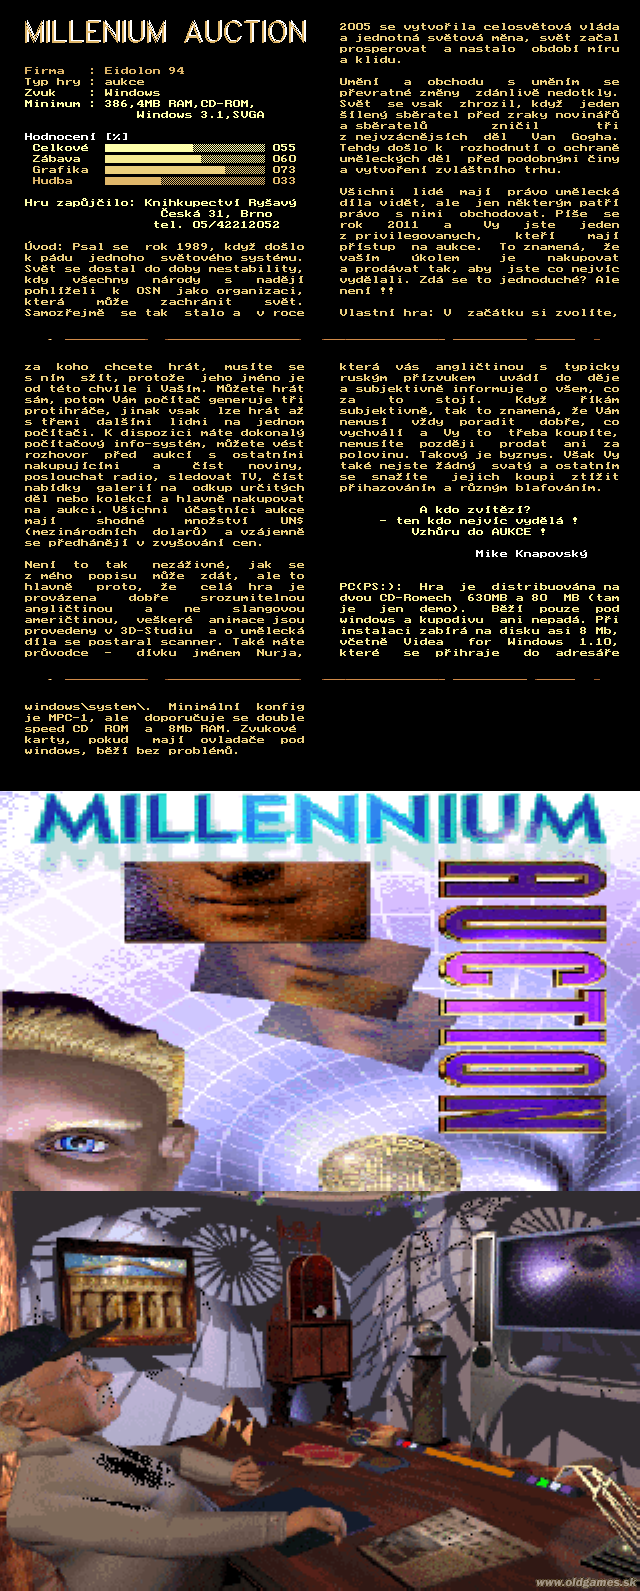 Millenium Auction